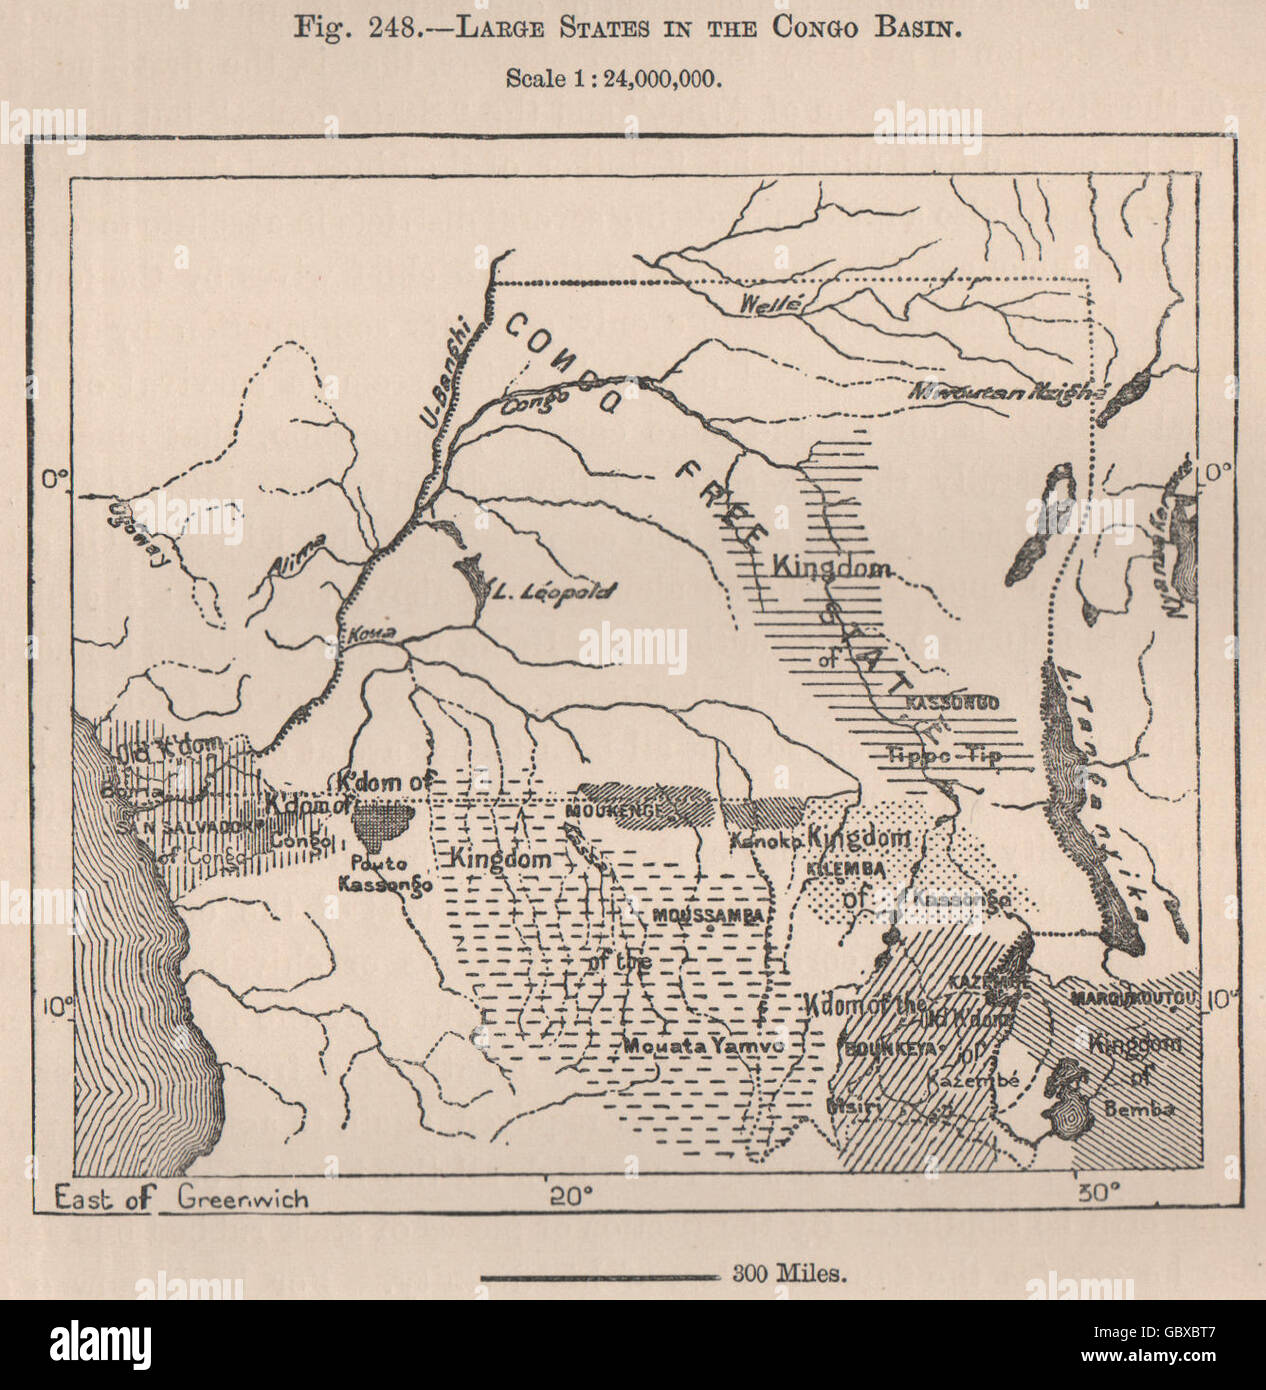 Les grands États du bassin du Congo. L'État libre du Congo. L'Angola. DR Congo, 1885 map Banque D'Images